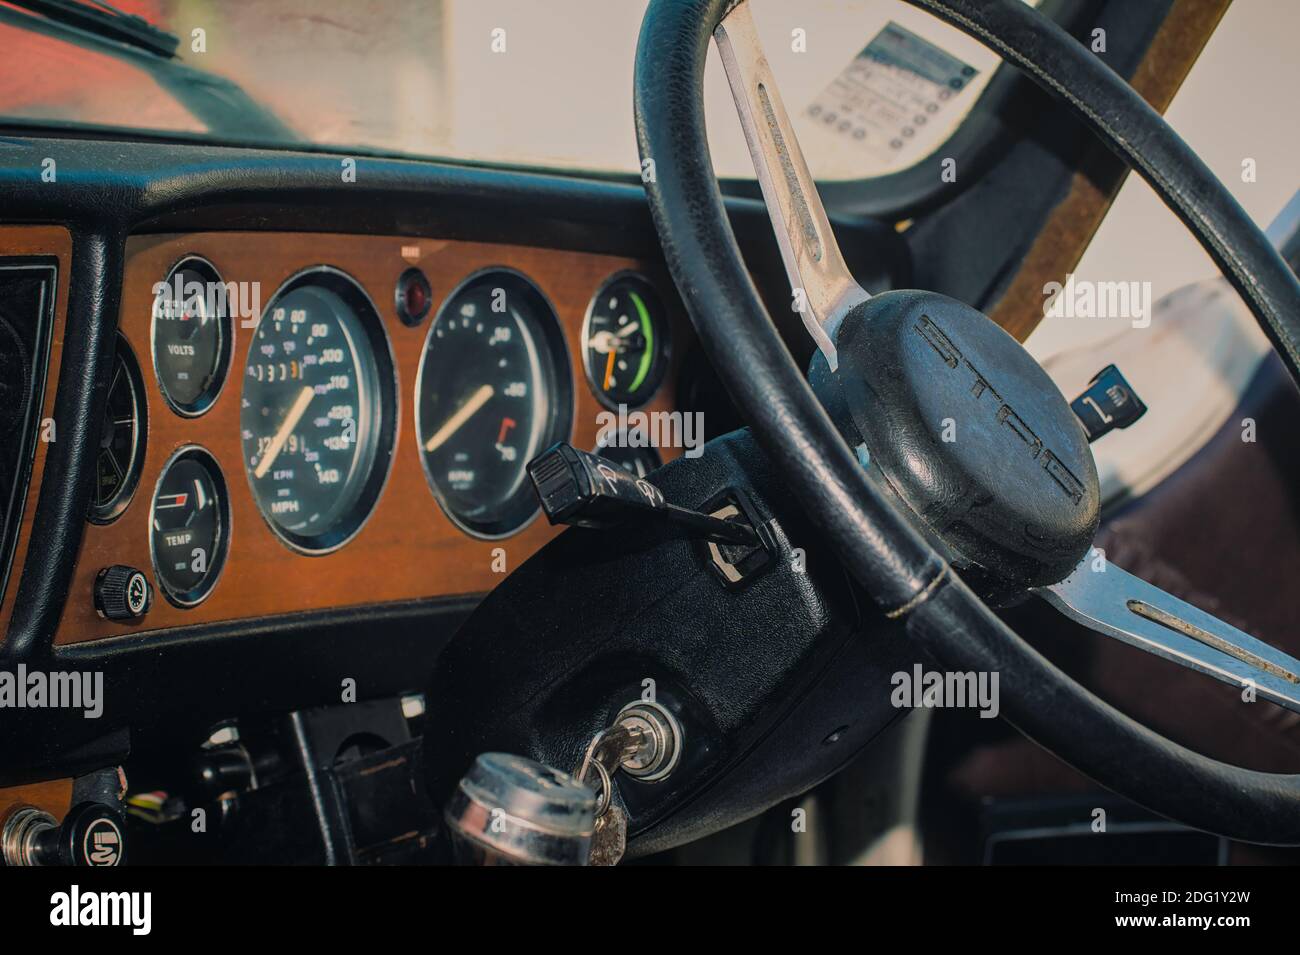 Tableau de bord d'UN Triumph Stag Mark 2 Classic Sports des années 1970 Voiture montrant le volant et le tableau de bord avec compteur de vitesse et Compteur de tours Banque D'Images